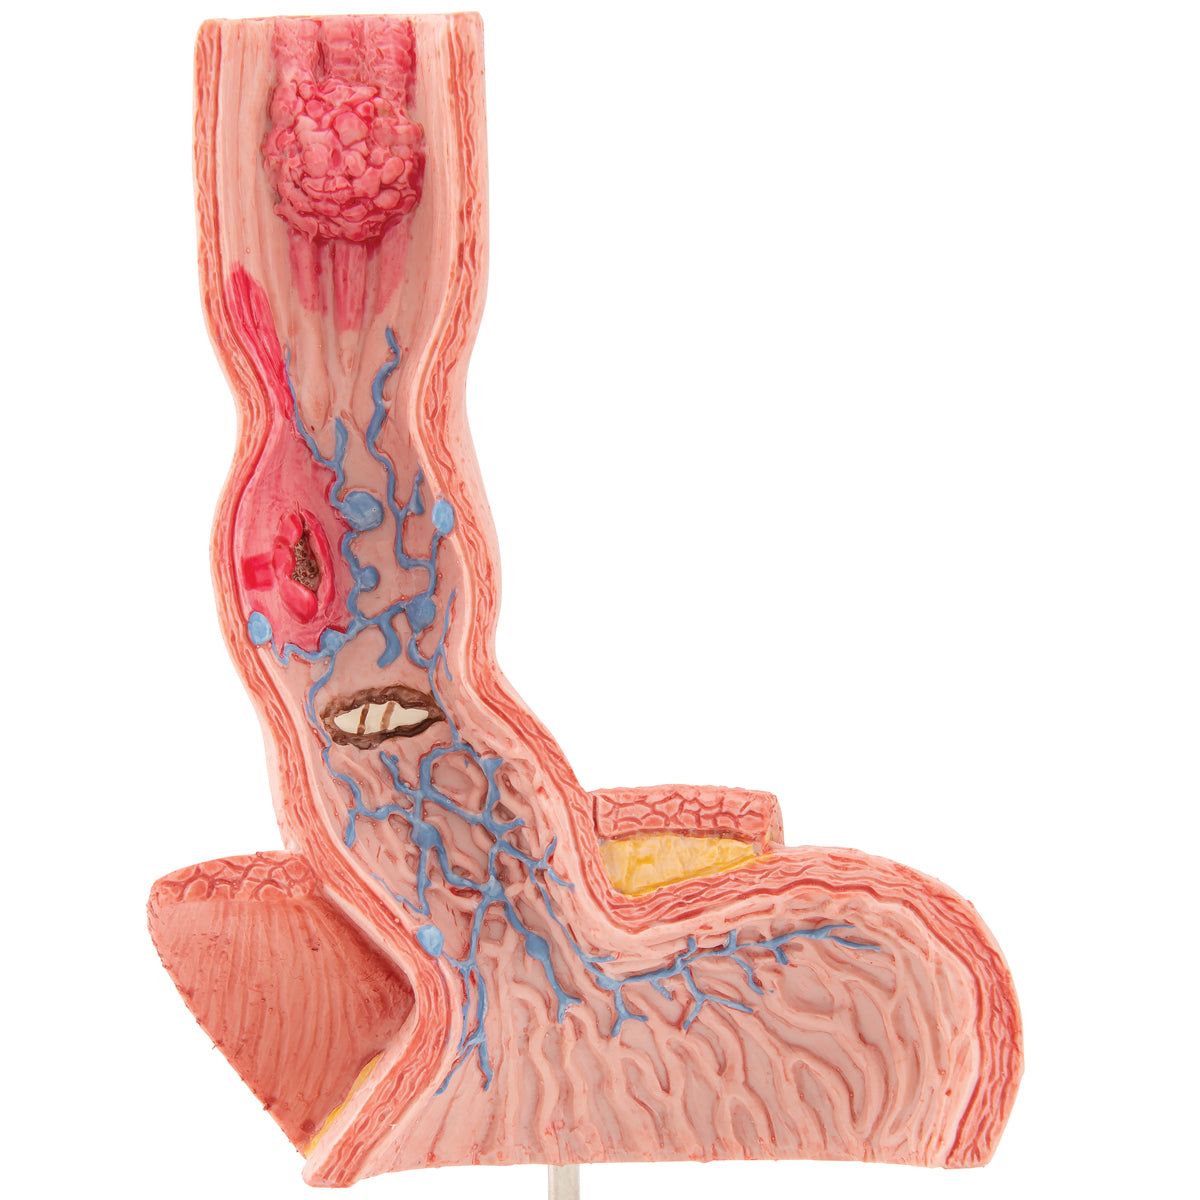 Model som viser spiserøret og lidt af mavesækkens indre med forskellige sygdomme